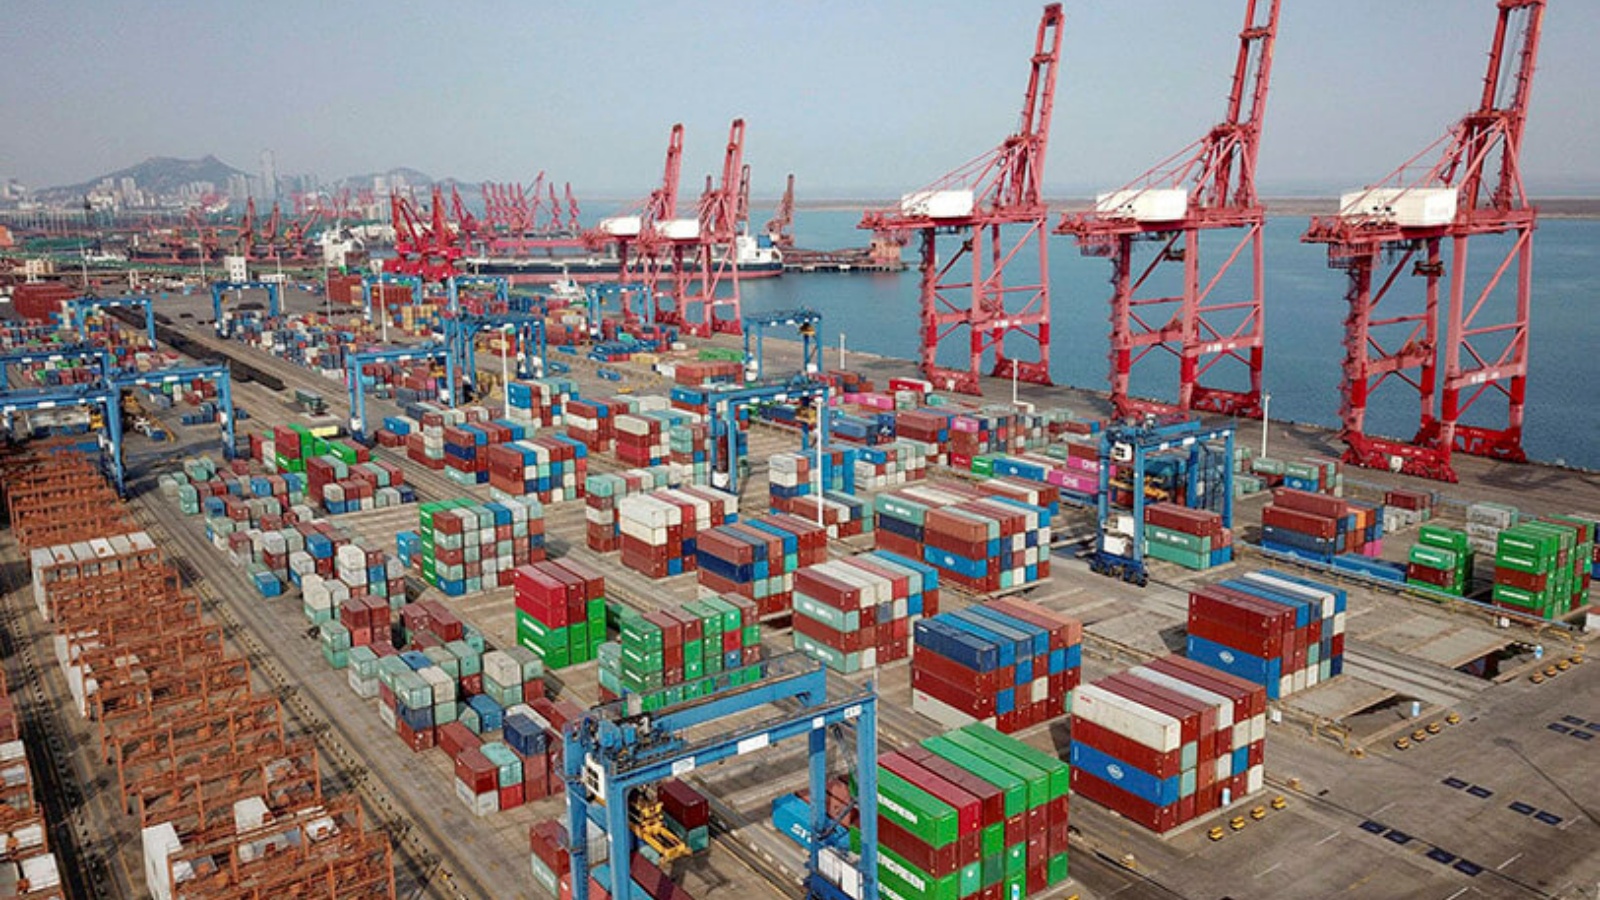 حاويات شحن الصادرات مكدسة في ميناء في Lianyungang، مقاطعة Jiangsu شرق الصين، 7 مارس 2021